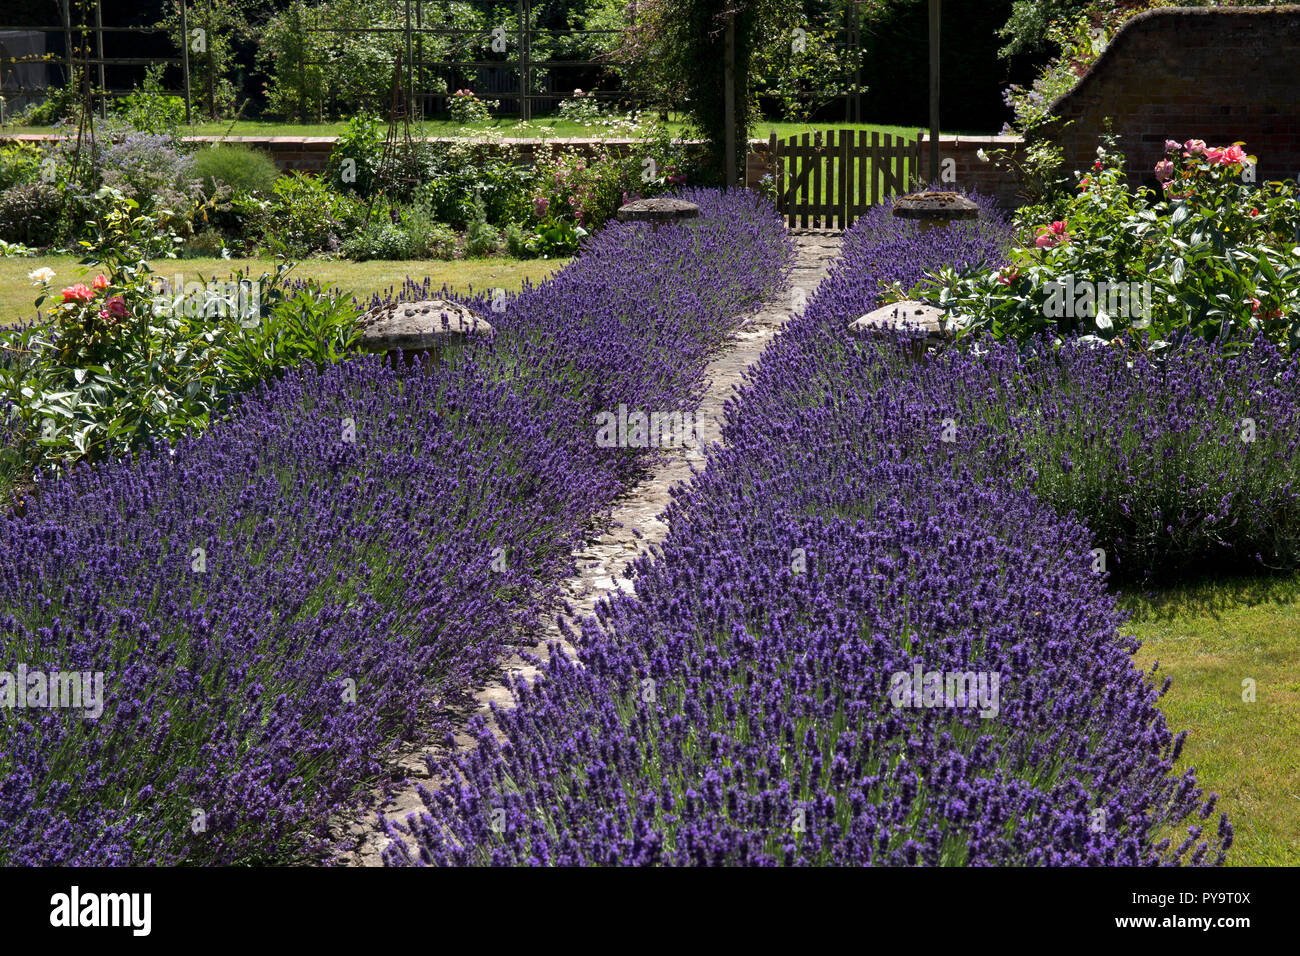 Jardin chemin bordé de lavande en jardin anglais,Angleterre,Europe Banque D'Images